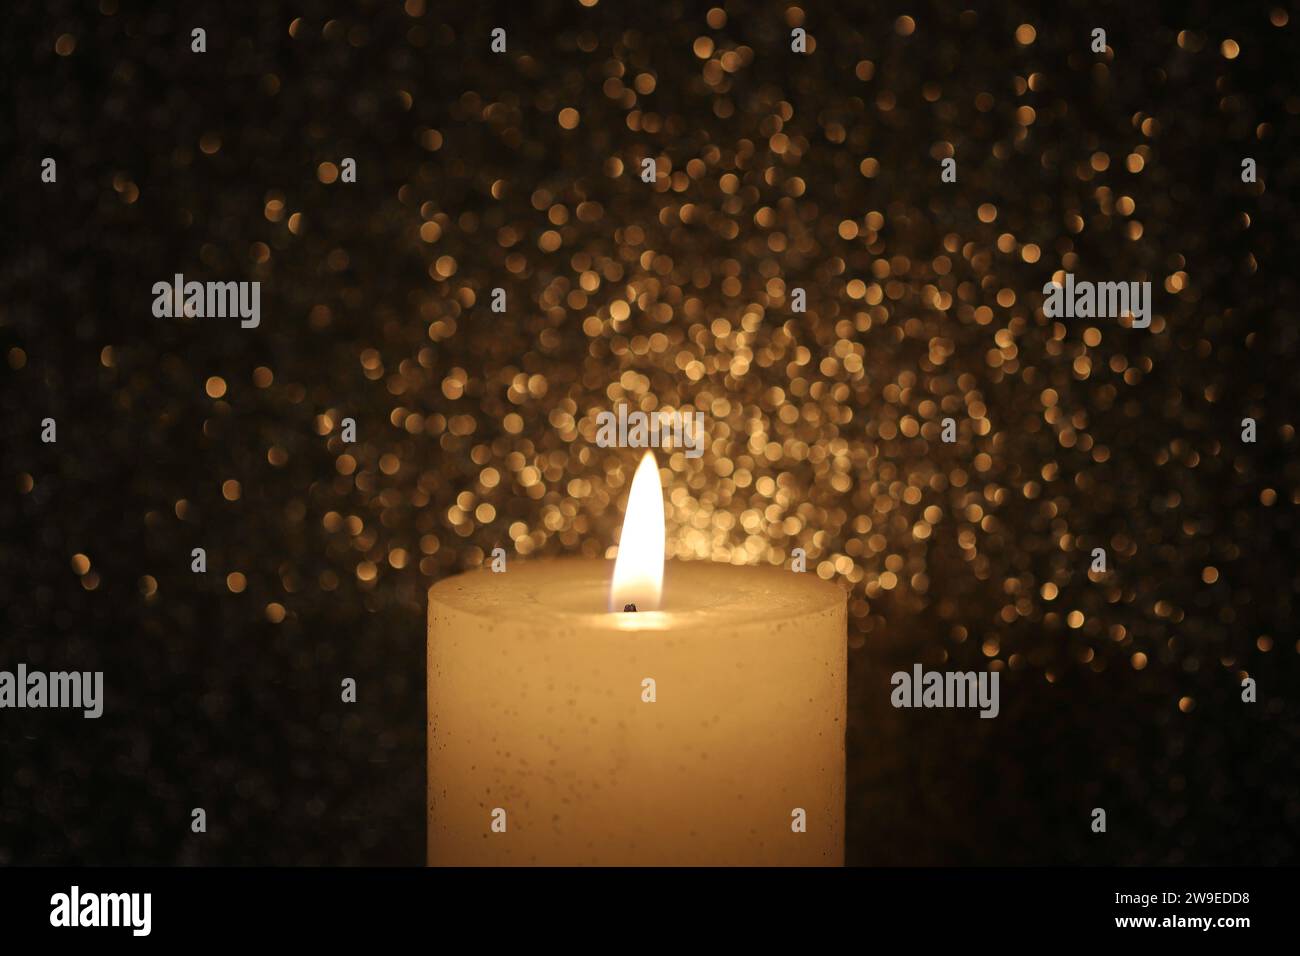 Pillar wax candle burning on white background Stock Photo - Alamy